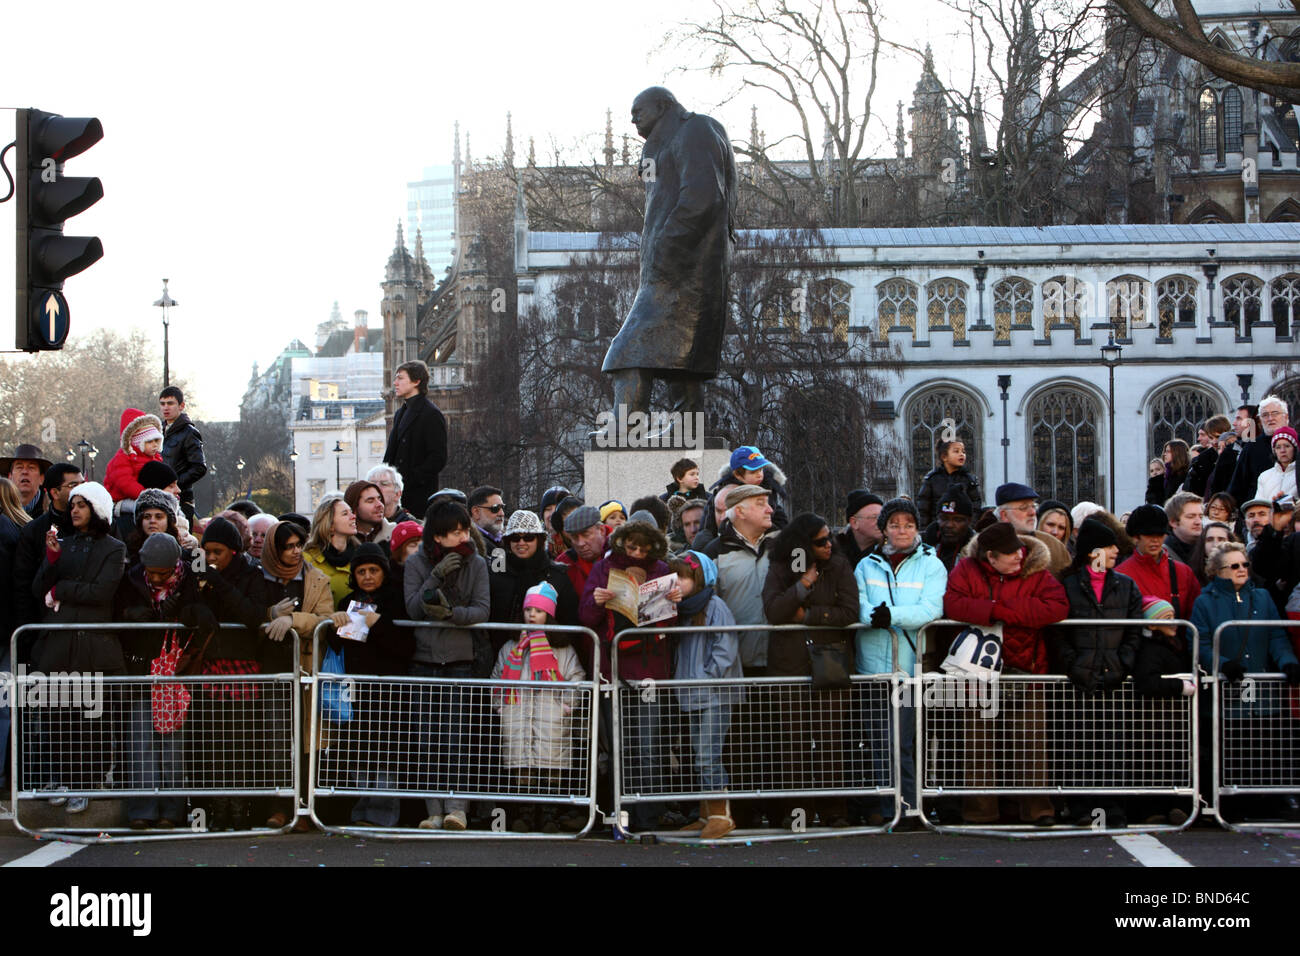 Les foules qui tapissent le bord de la route à la place du Parlement au cours de la New Years Day Parade, Westminster, Londres, SW1. Banque D'Images